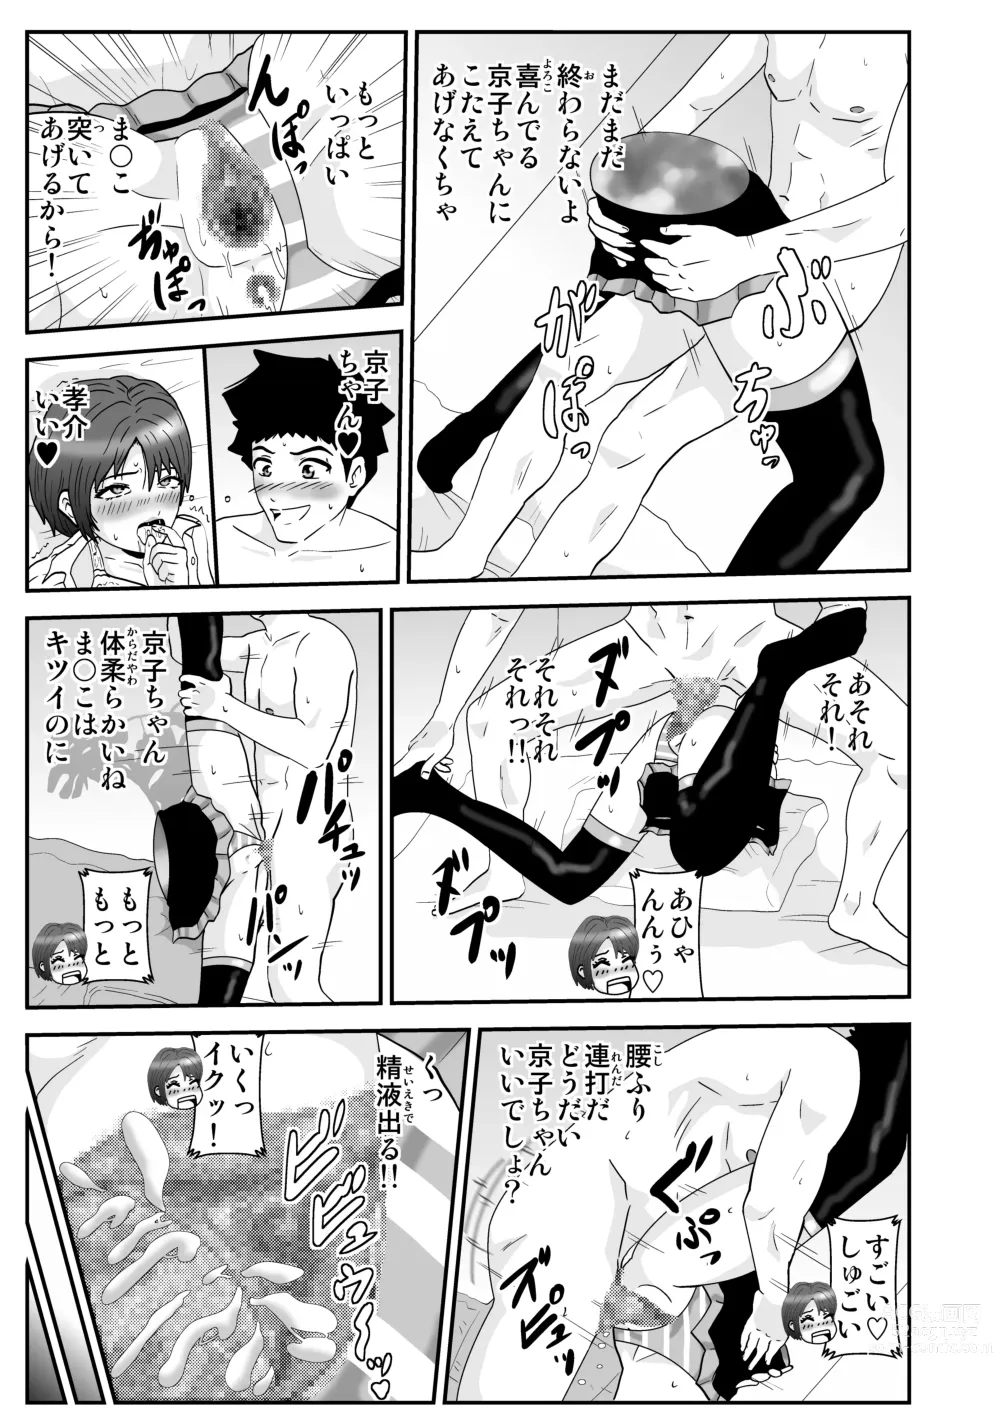 Page 11 of doujinshi Esper Kyoko